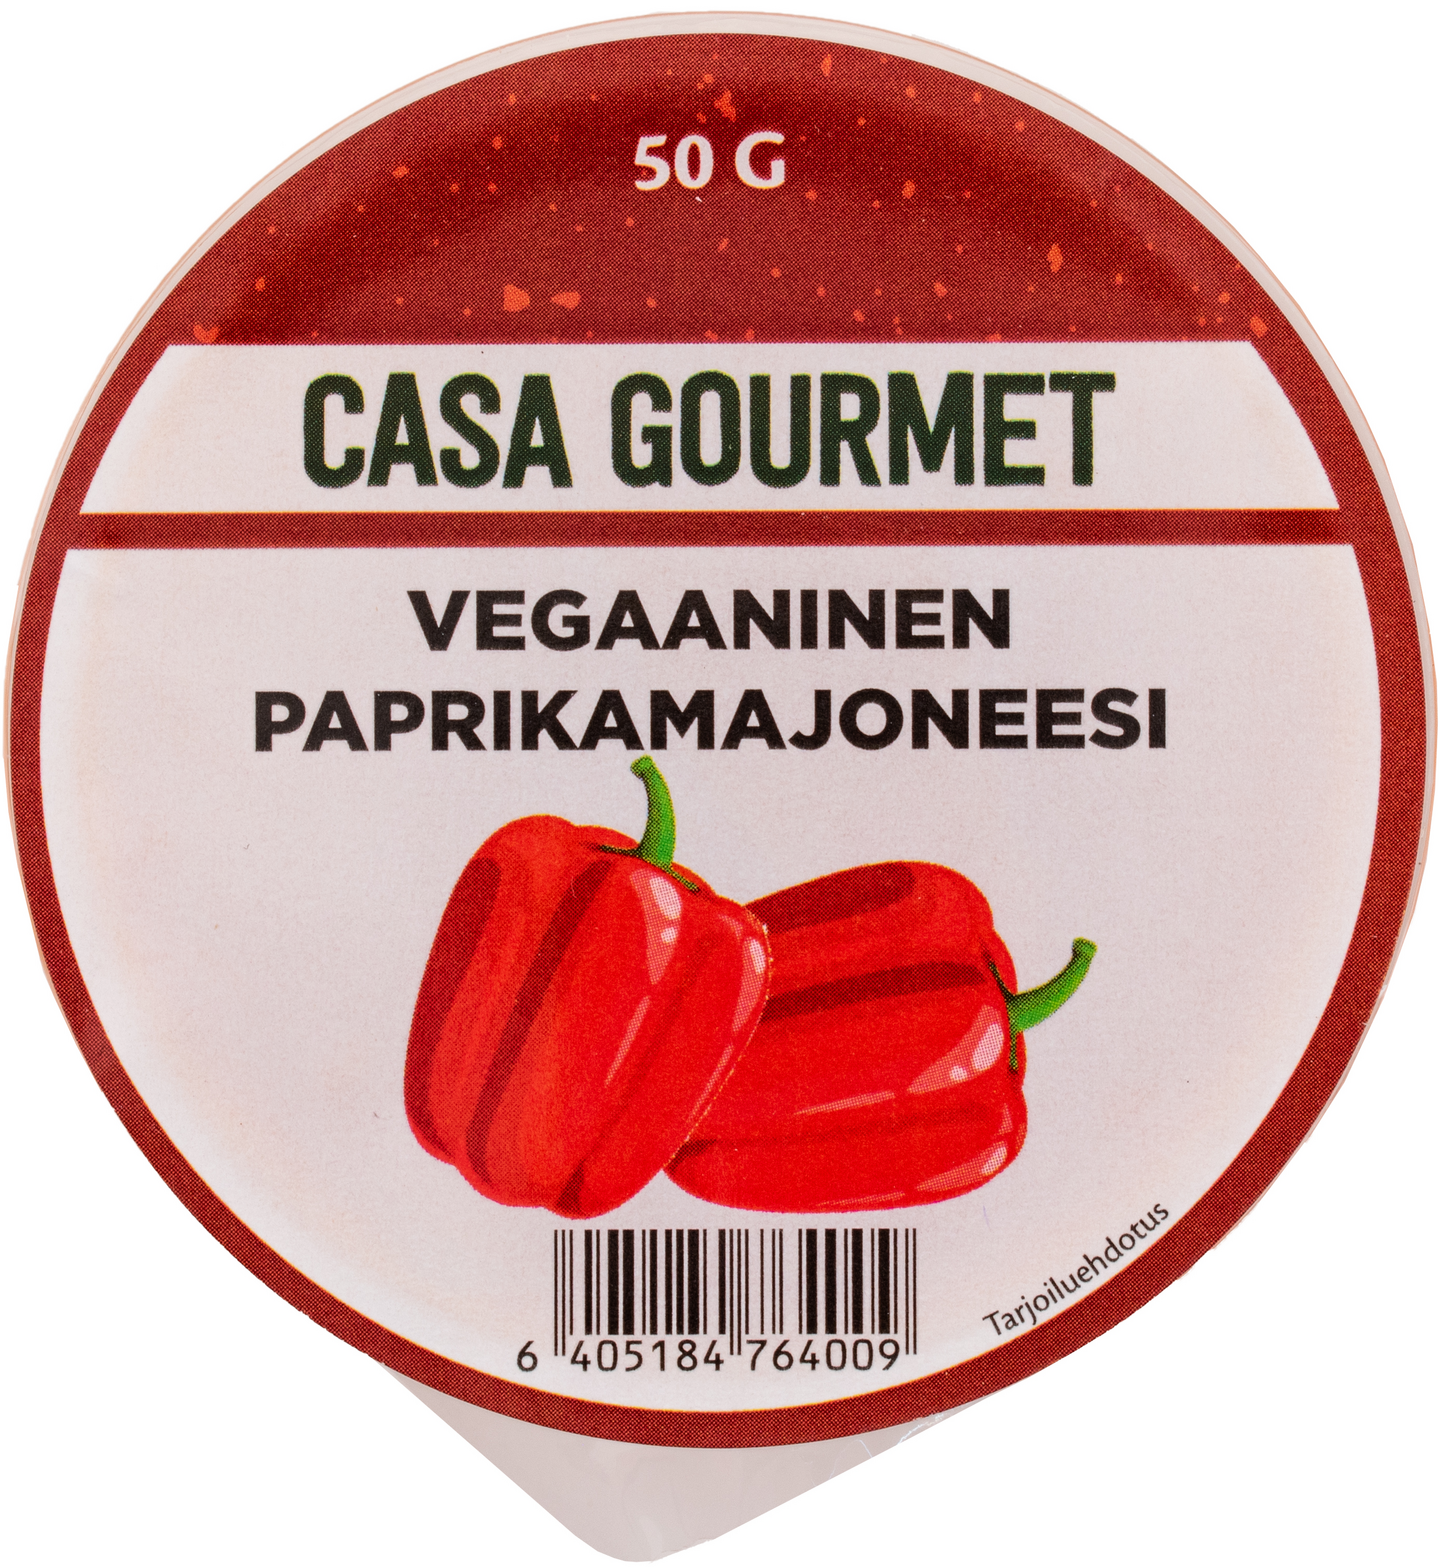 CaSa Gourmet vegaaninen paprikamajoneesi 50g